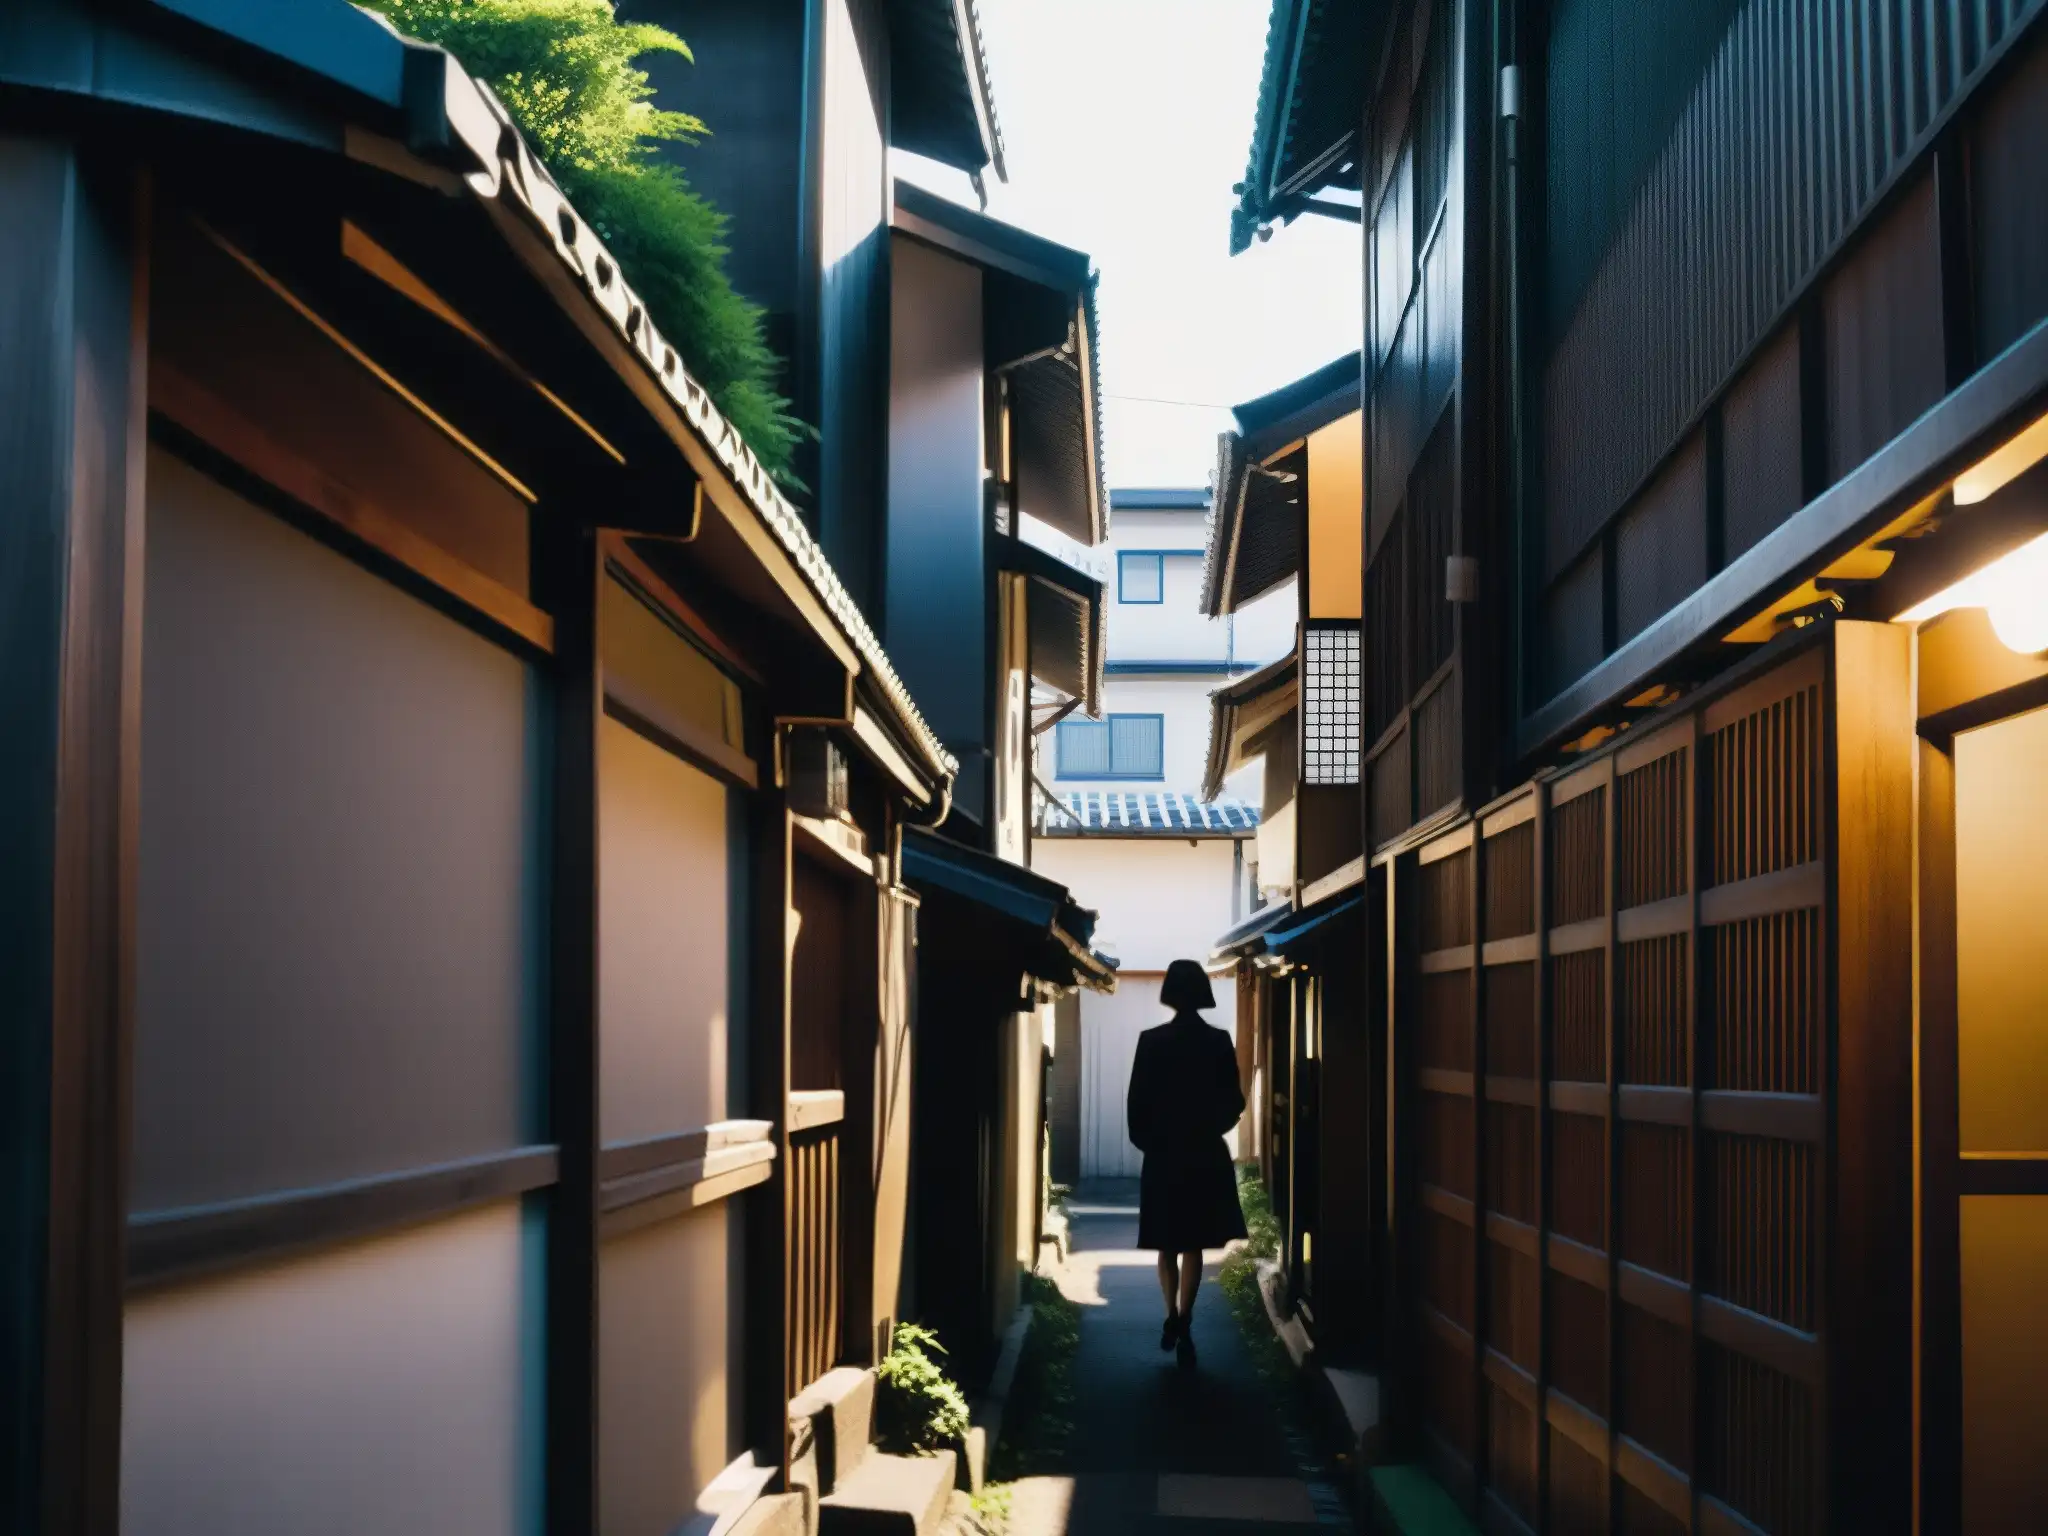 'Una estrecha callejuela urbana en Japón, con edificios altos y sombríos